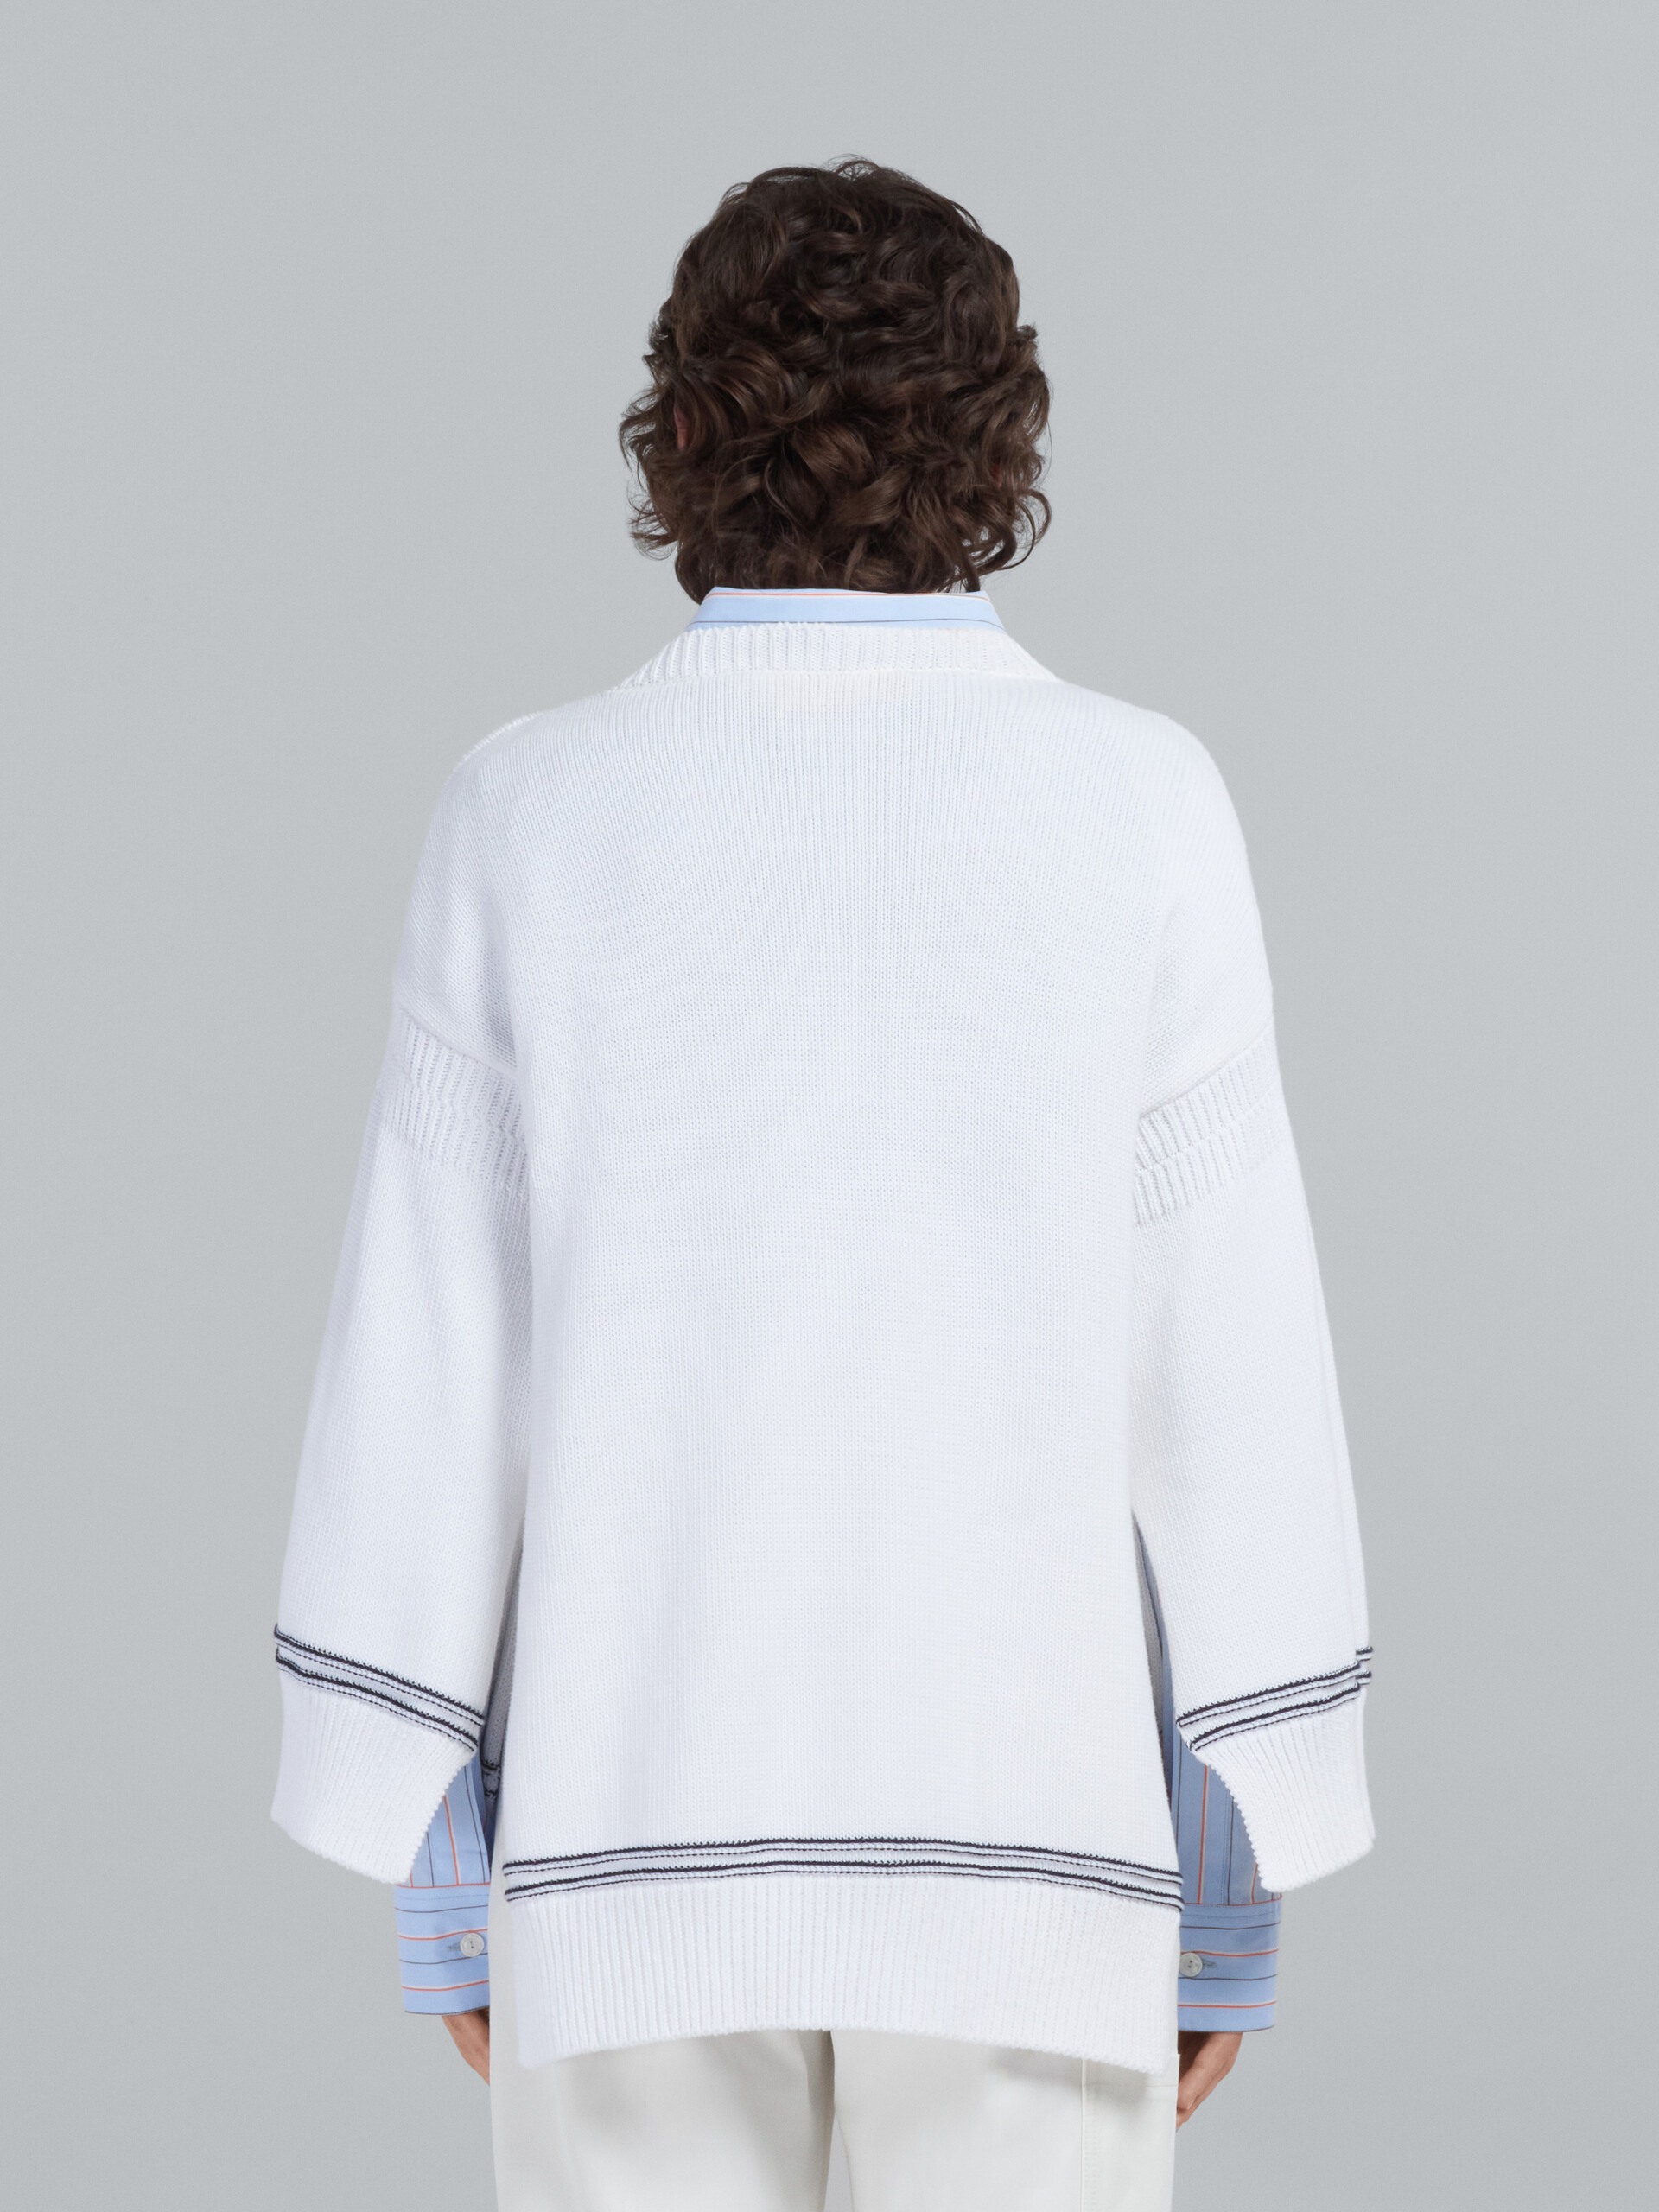 Jersey blanco de algodón con logotipo - jerseys - Image 3